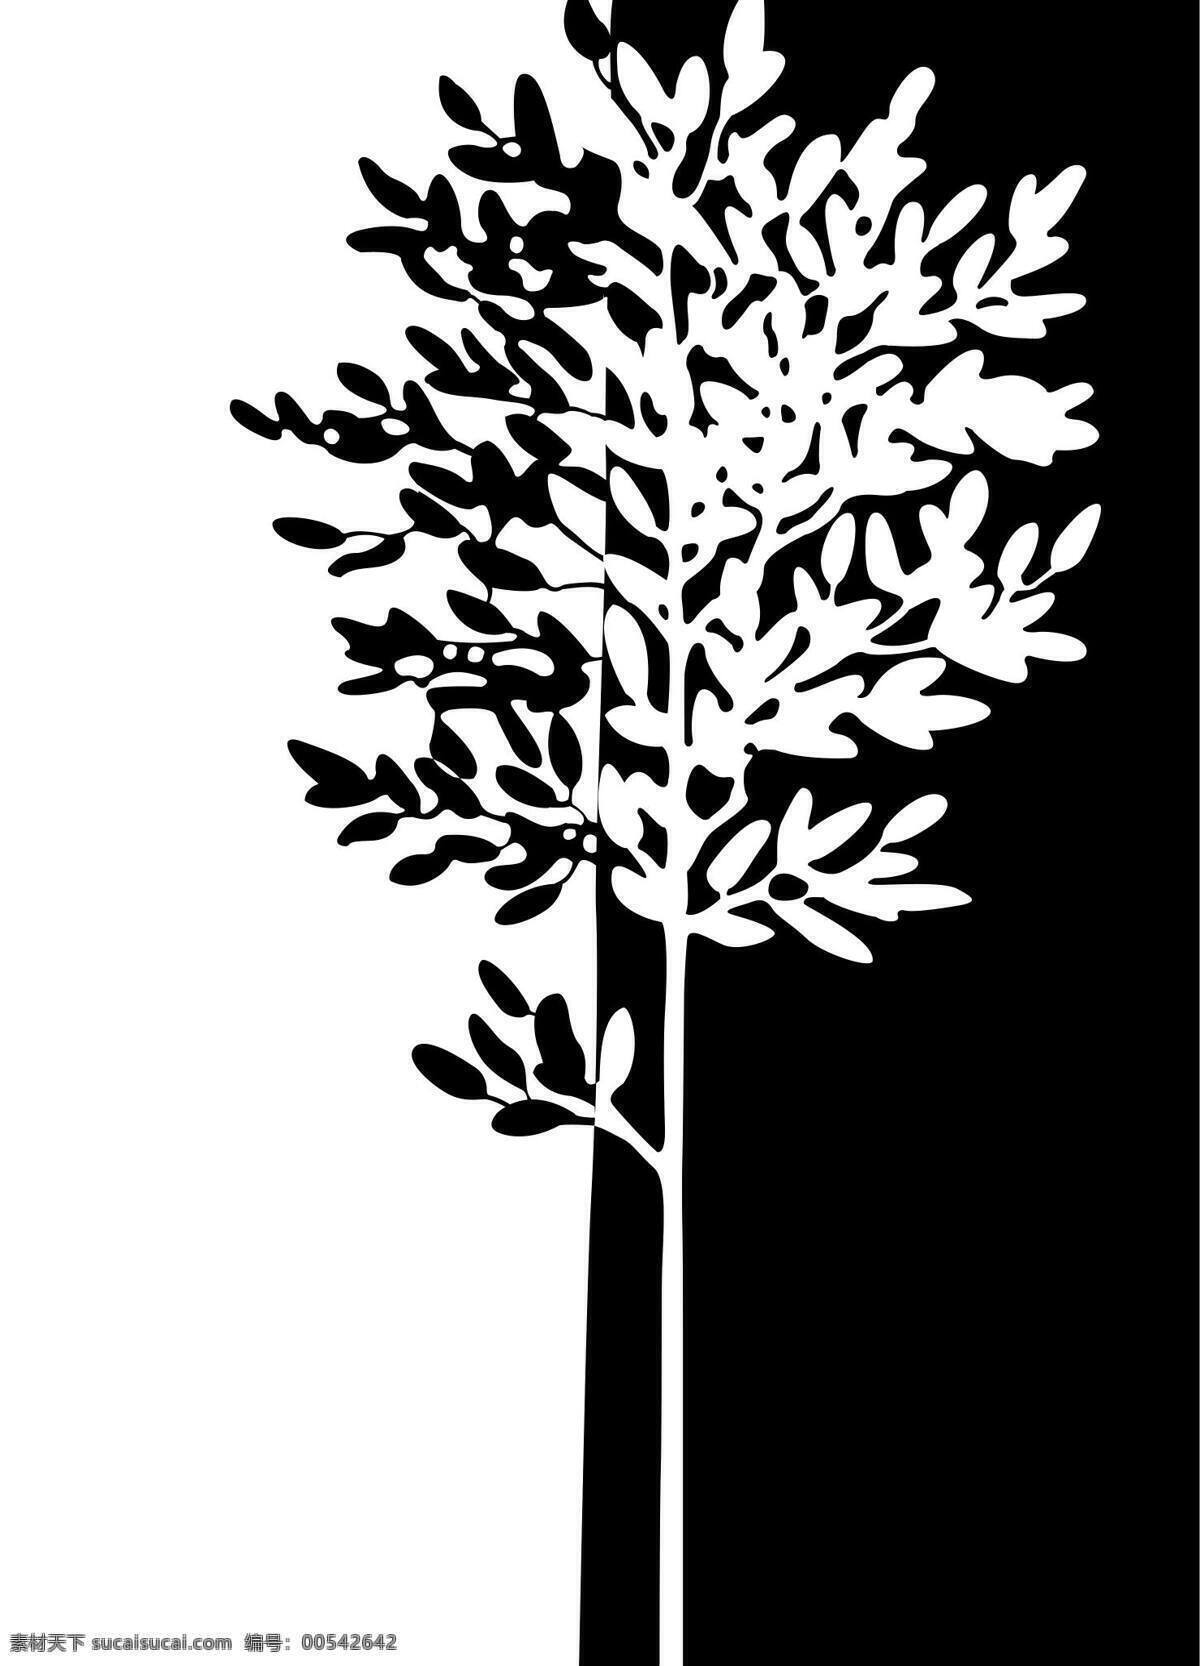 黑白 发财 树 装饰画 发财树 黑白装饰画 现代装饰画 装饰素材 无框画